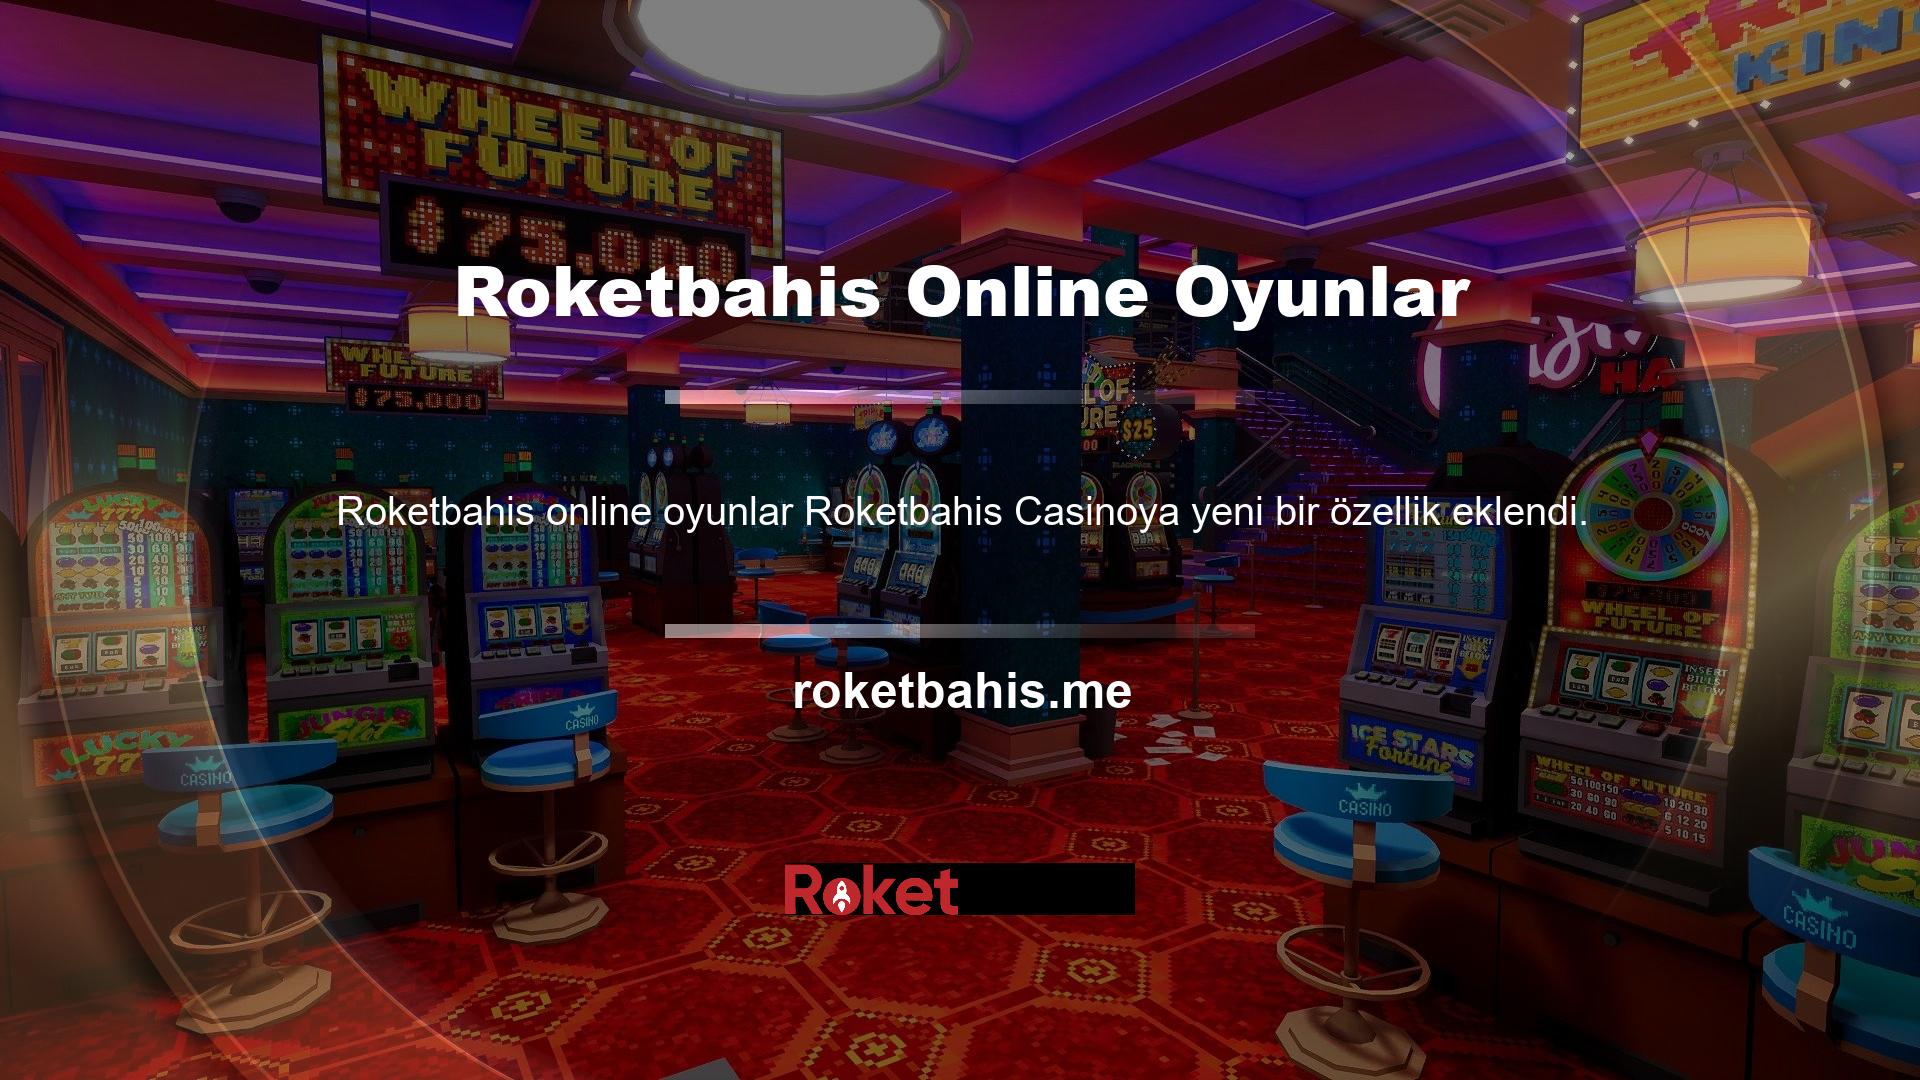 Günümüzde spor ve casino oyunları gelir elde etme yöntemi olarak kullanılmakta ve bu hizmetlere online oyunlar üzerinden de ulaşılabilmektedir